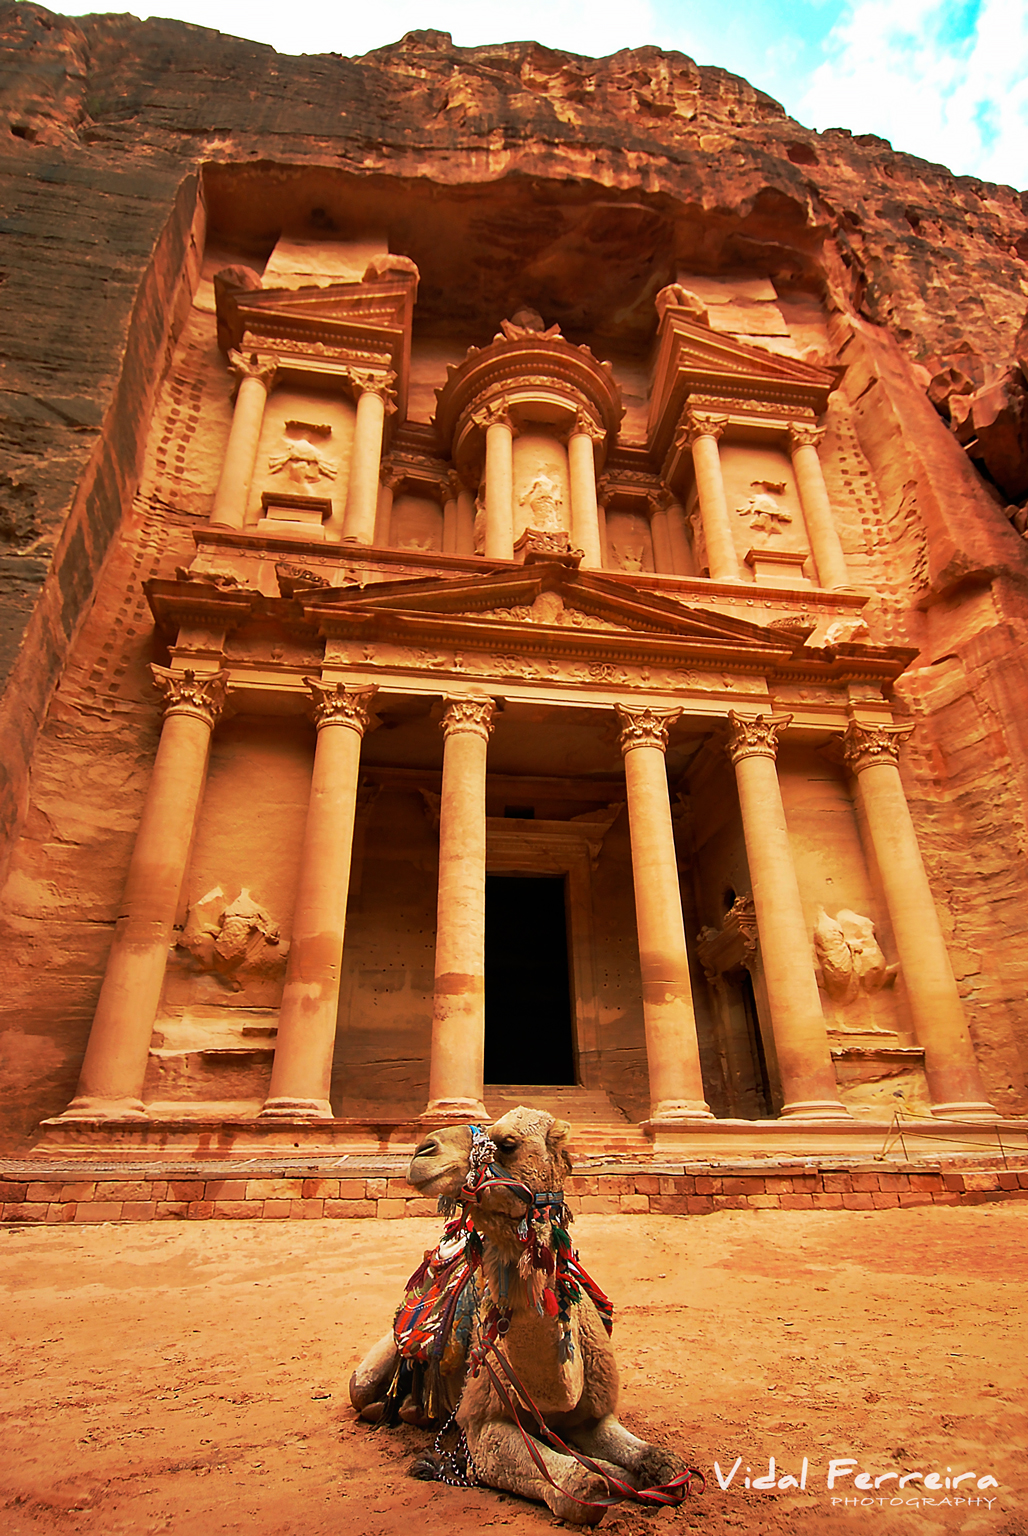 A Wonder - Petra, Jordan